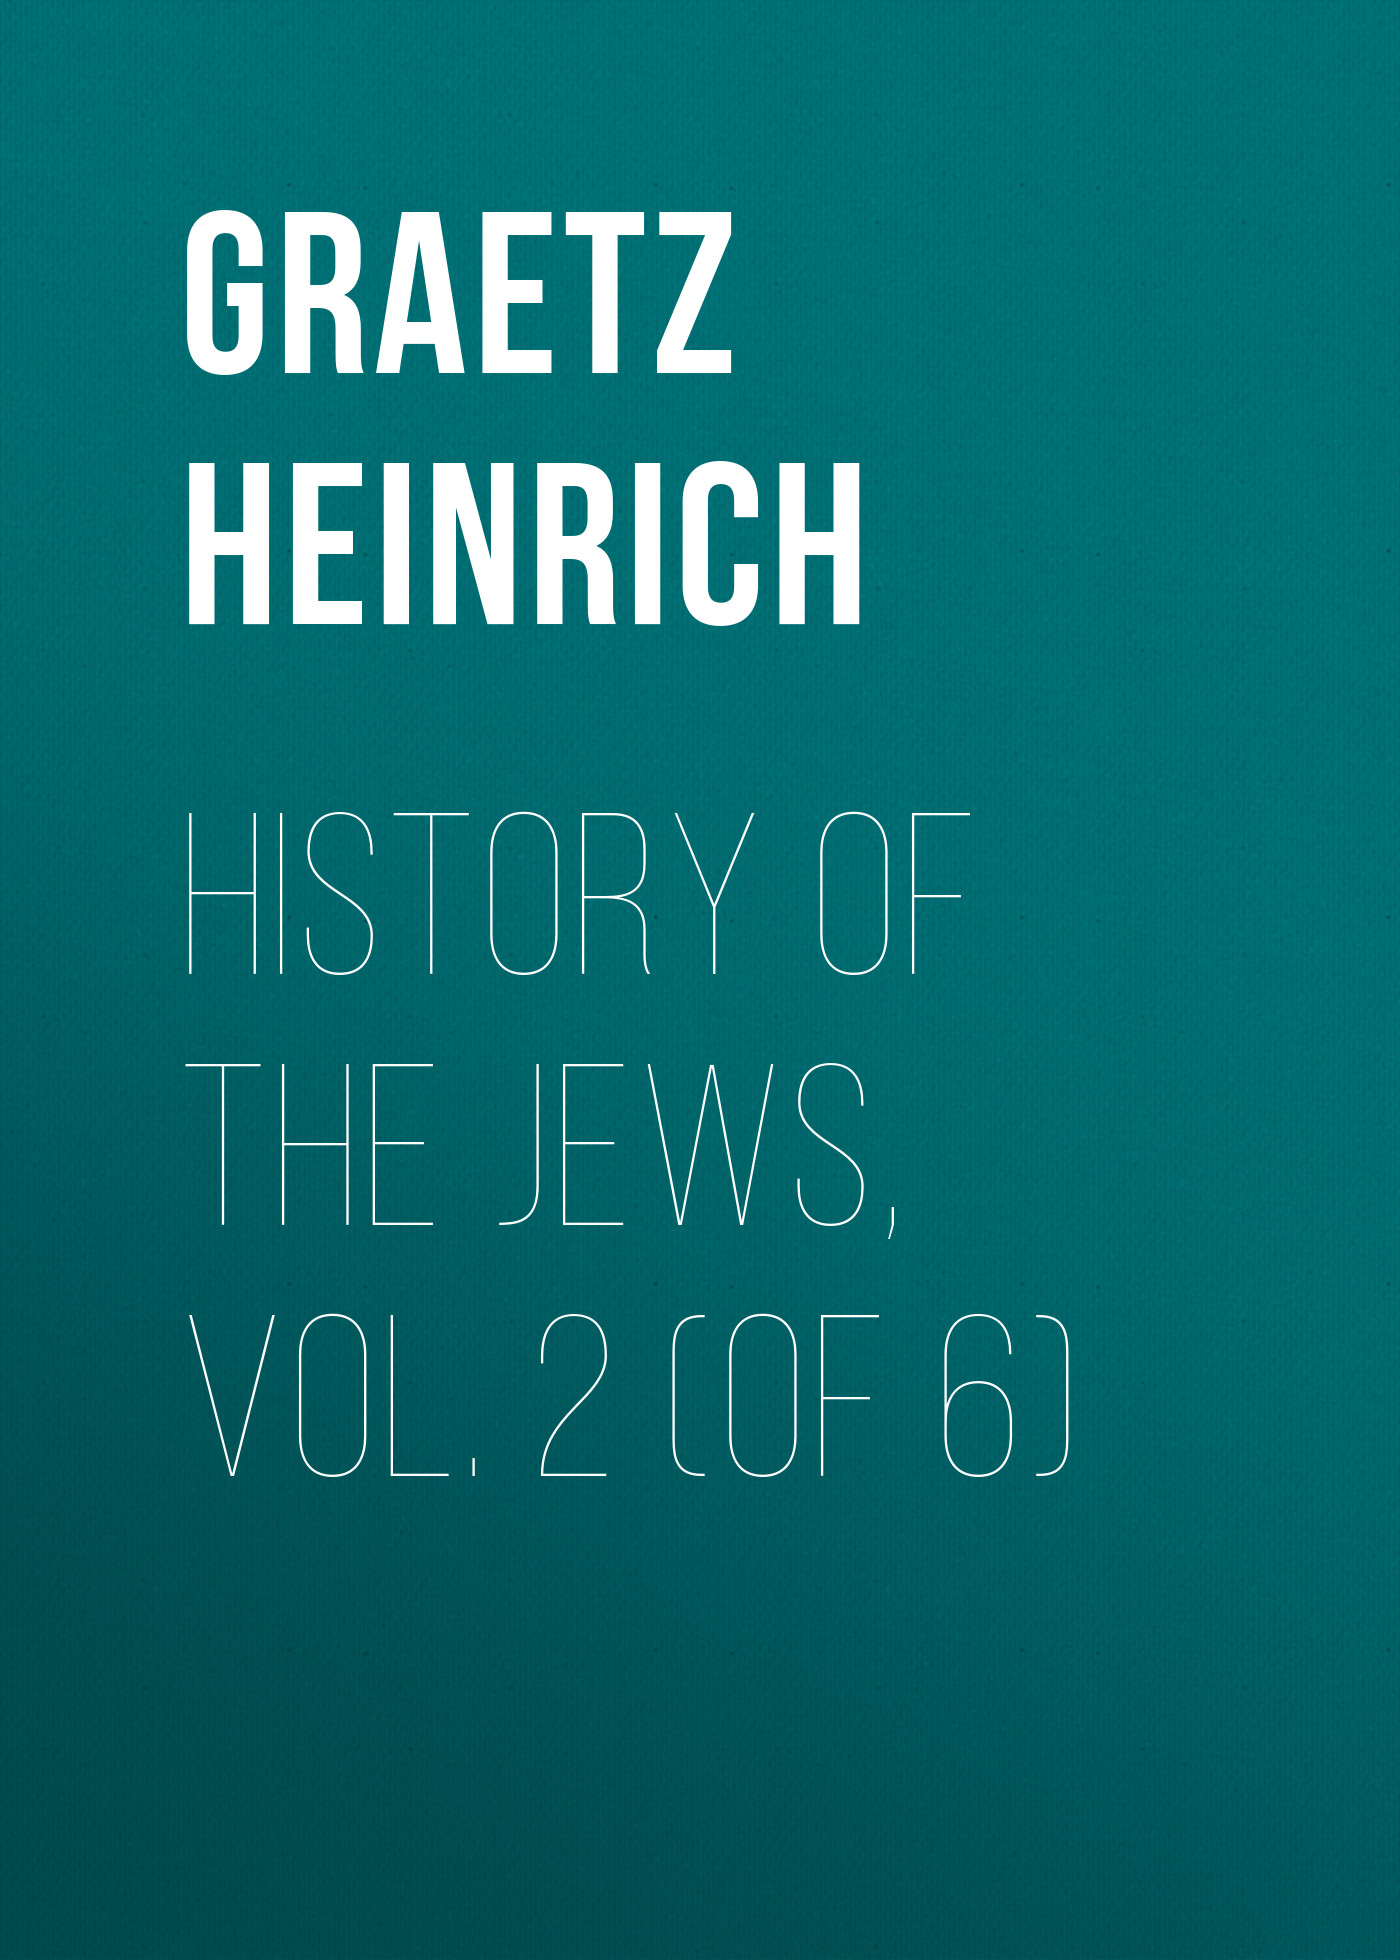 Книга History of the Jews, Vol. 2 (of 6) из серии , созданная Heinrich Graetz, может относится к жанру История, Зарубежная старинная литература, Зарубежная классика. Стоимость электронной книги History of the Jews, Vol. 2 (of 6) с идентификатором 24936237 составляет 0 руб.